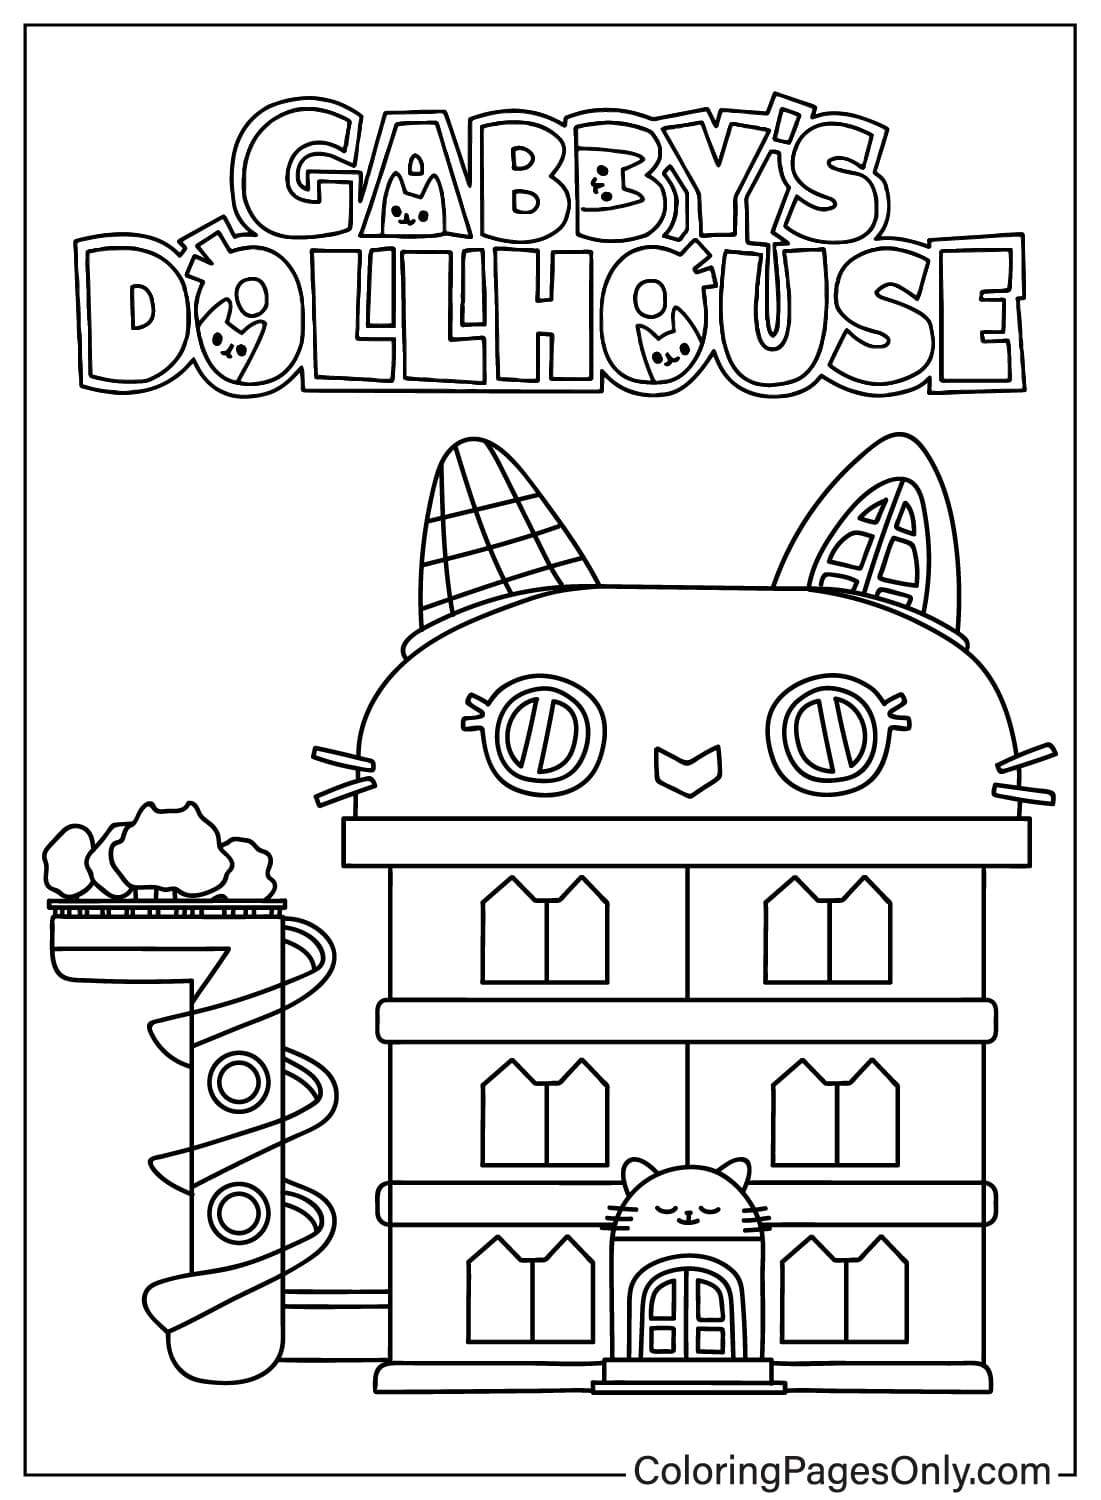 Página para colorear de la casa de muñecas de Gabby gratis de La casa de muñecas de Gabby